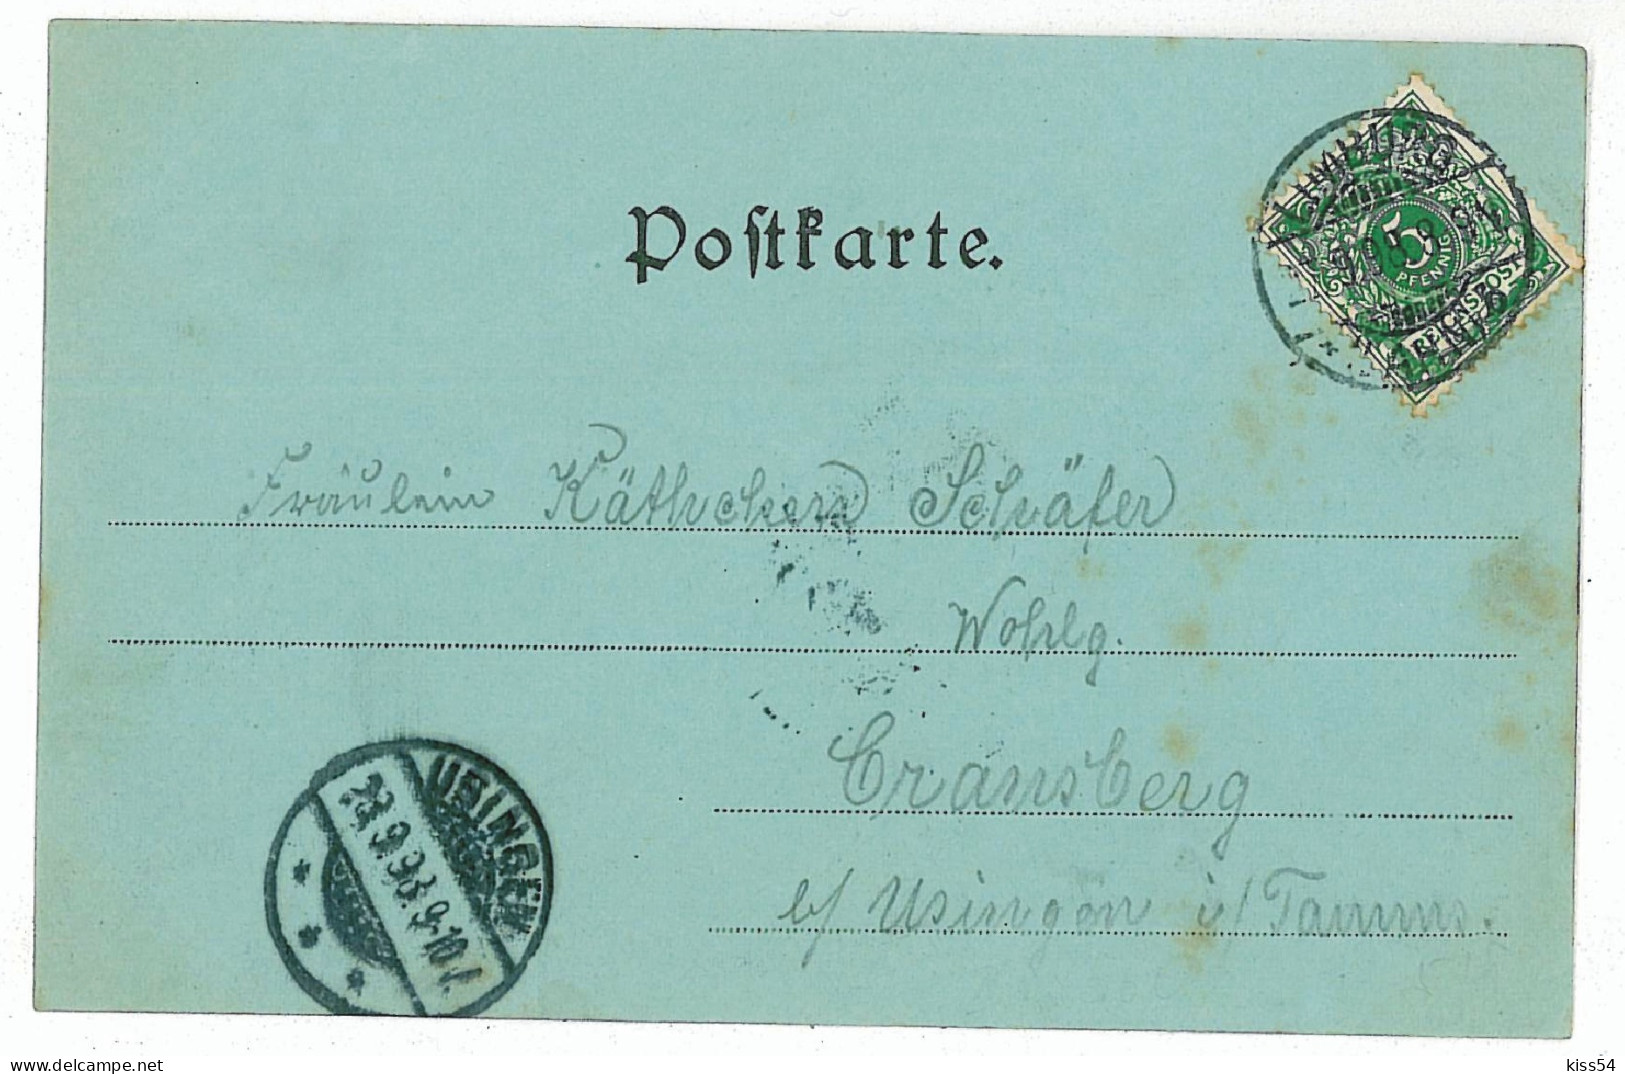 GER 00 - 5724 KOBLENZ, Germany, Litho, Bridge - Old Postcard - Used - 1898 - Koblenz